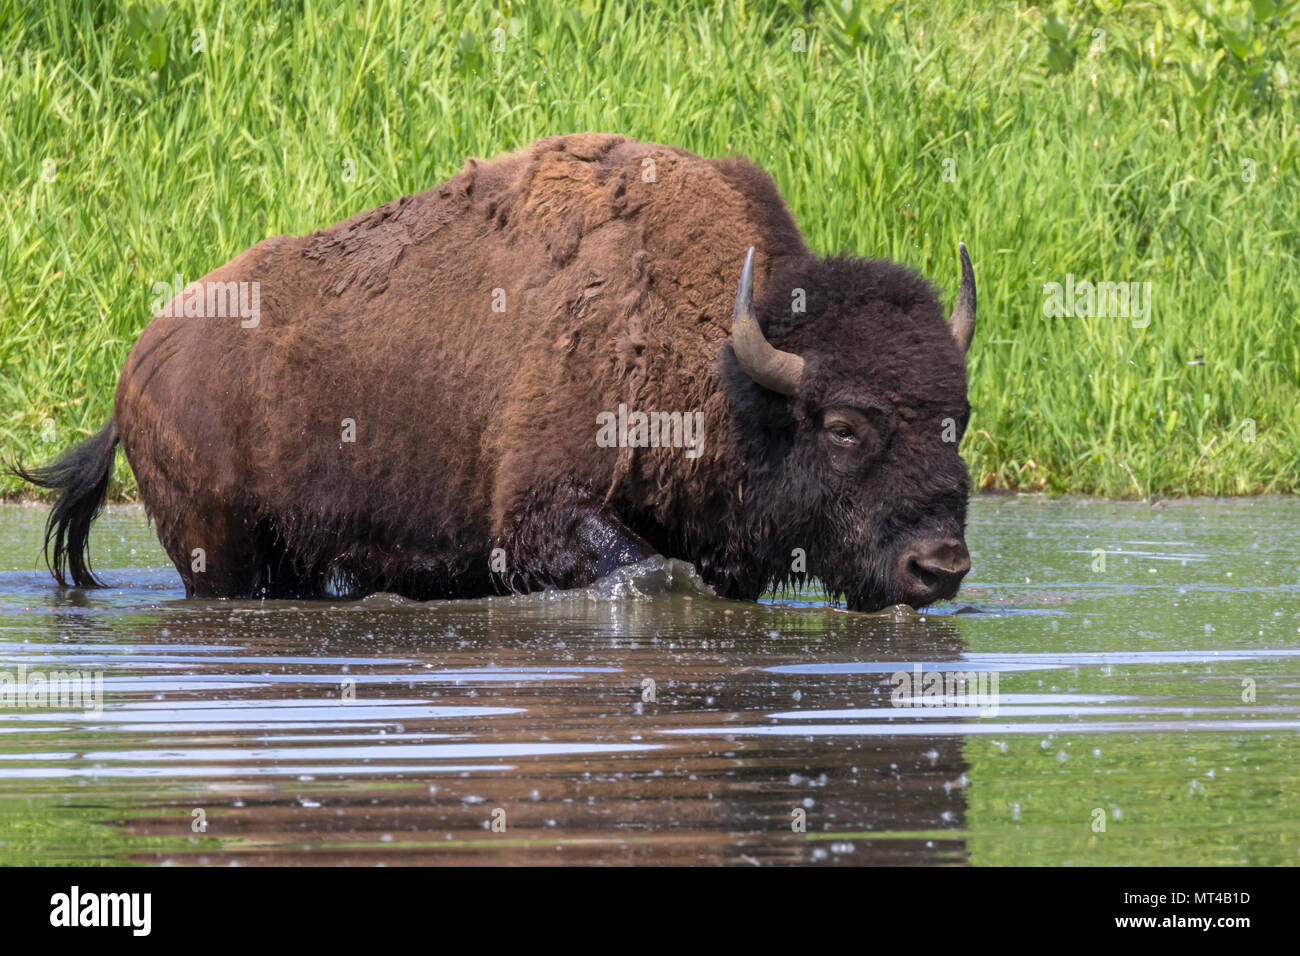 Le bison d'Amérique (Bison bison) baignade dans un lac au cours de chaude journée d'été, Iowa, États-Unis. Banque D'Images